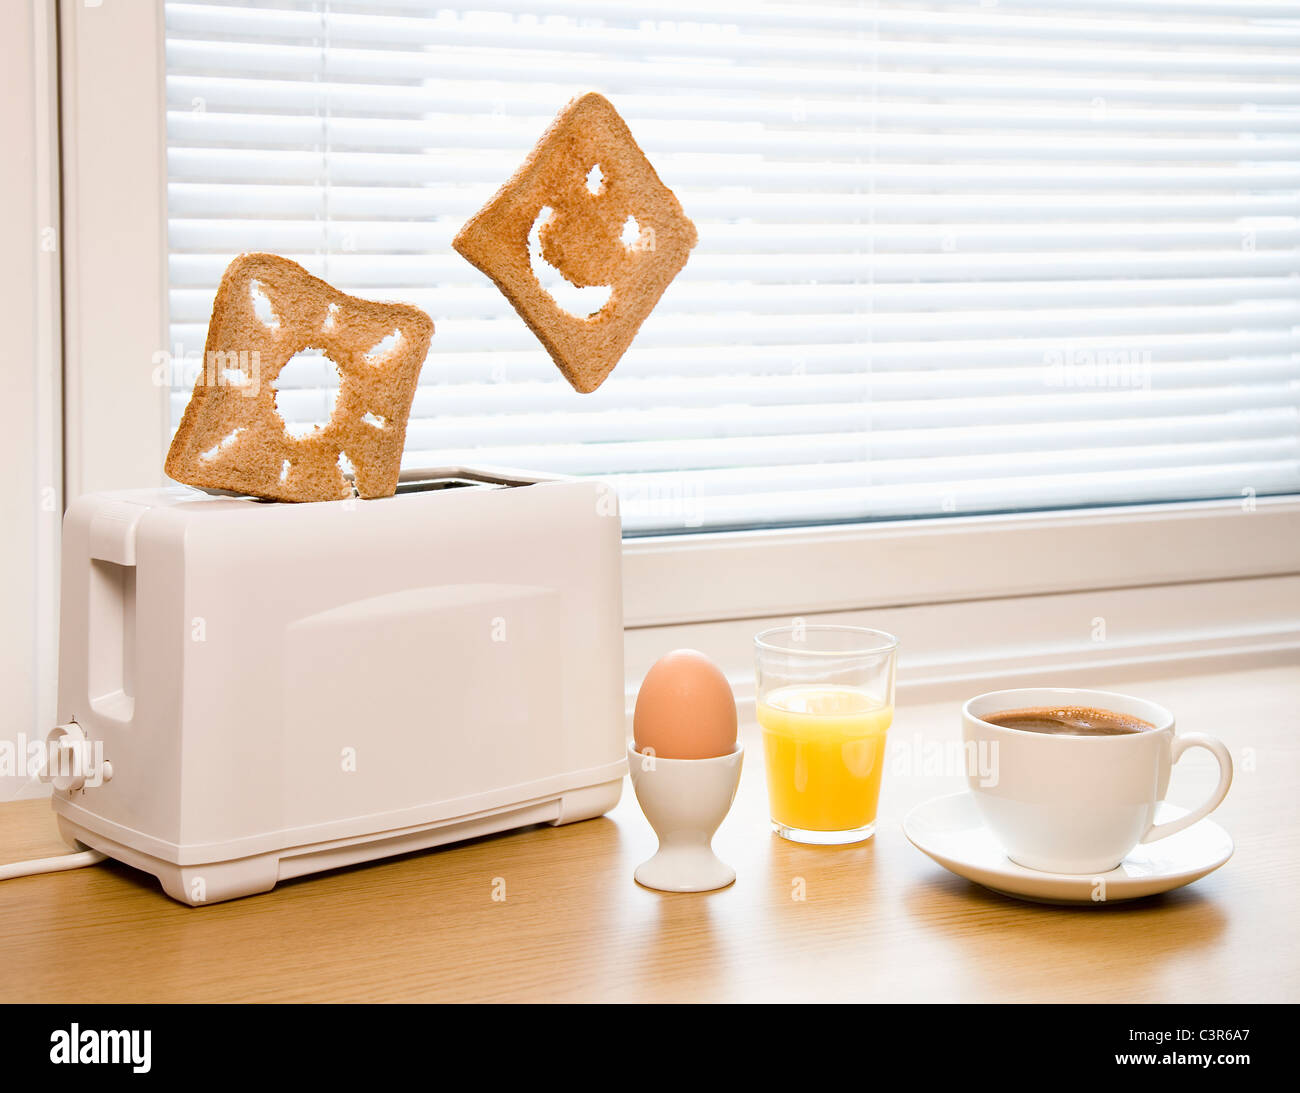 Le petit-déjeuner avec du pain grillé et sun smiley Banque D'Images